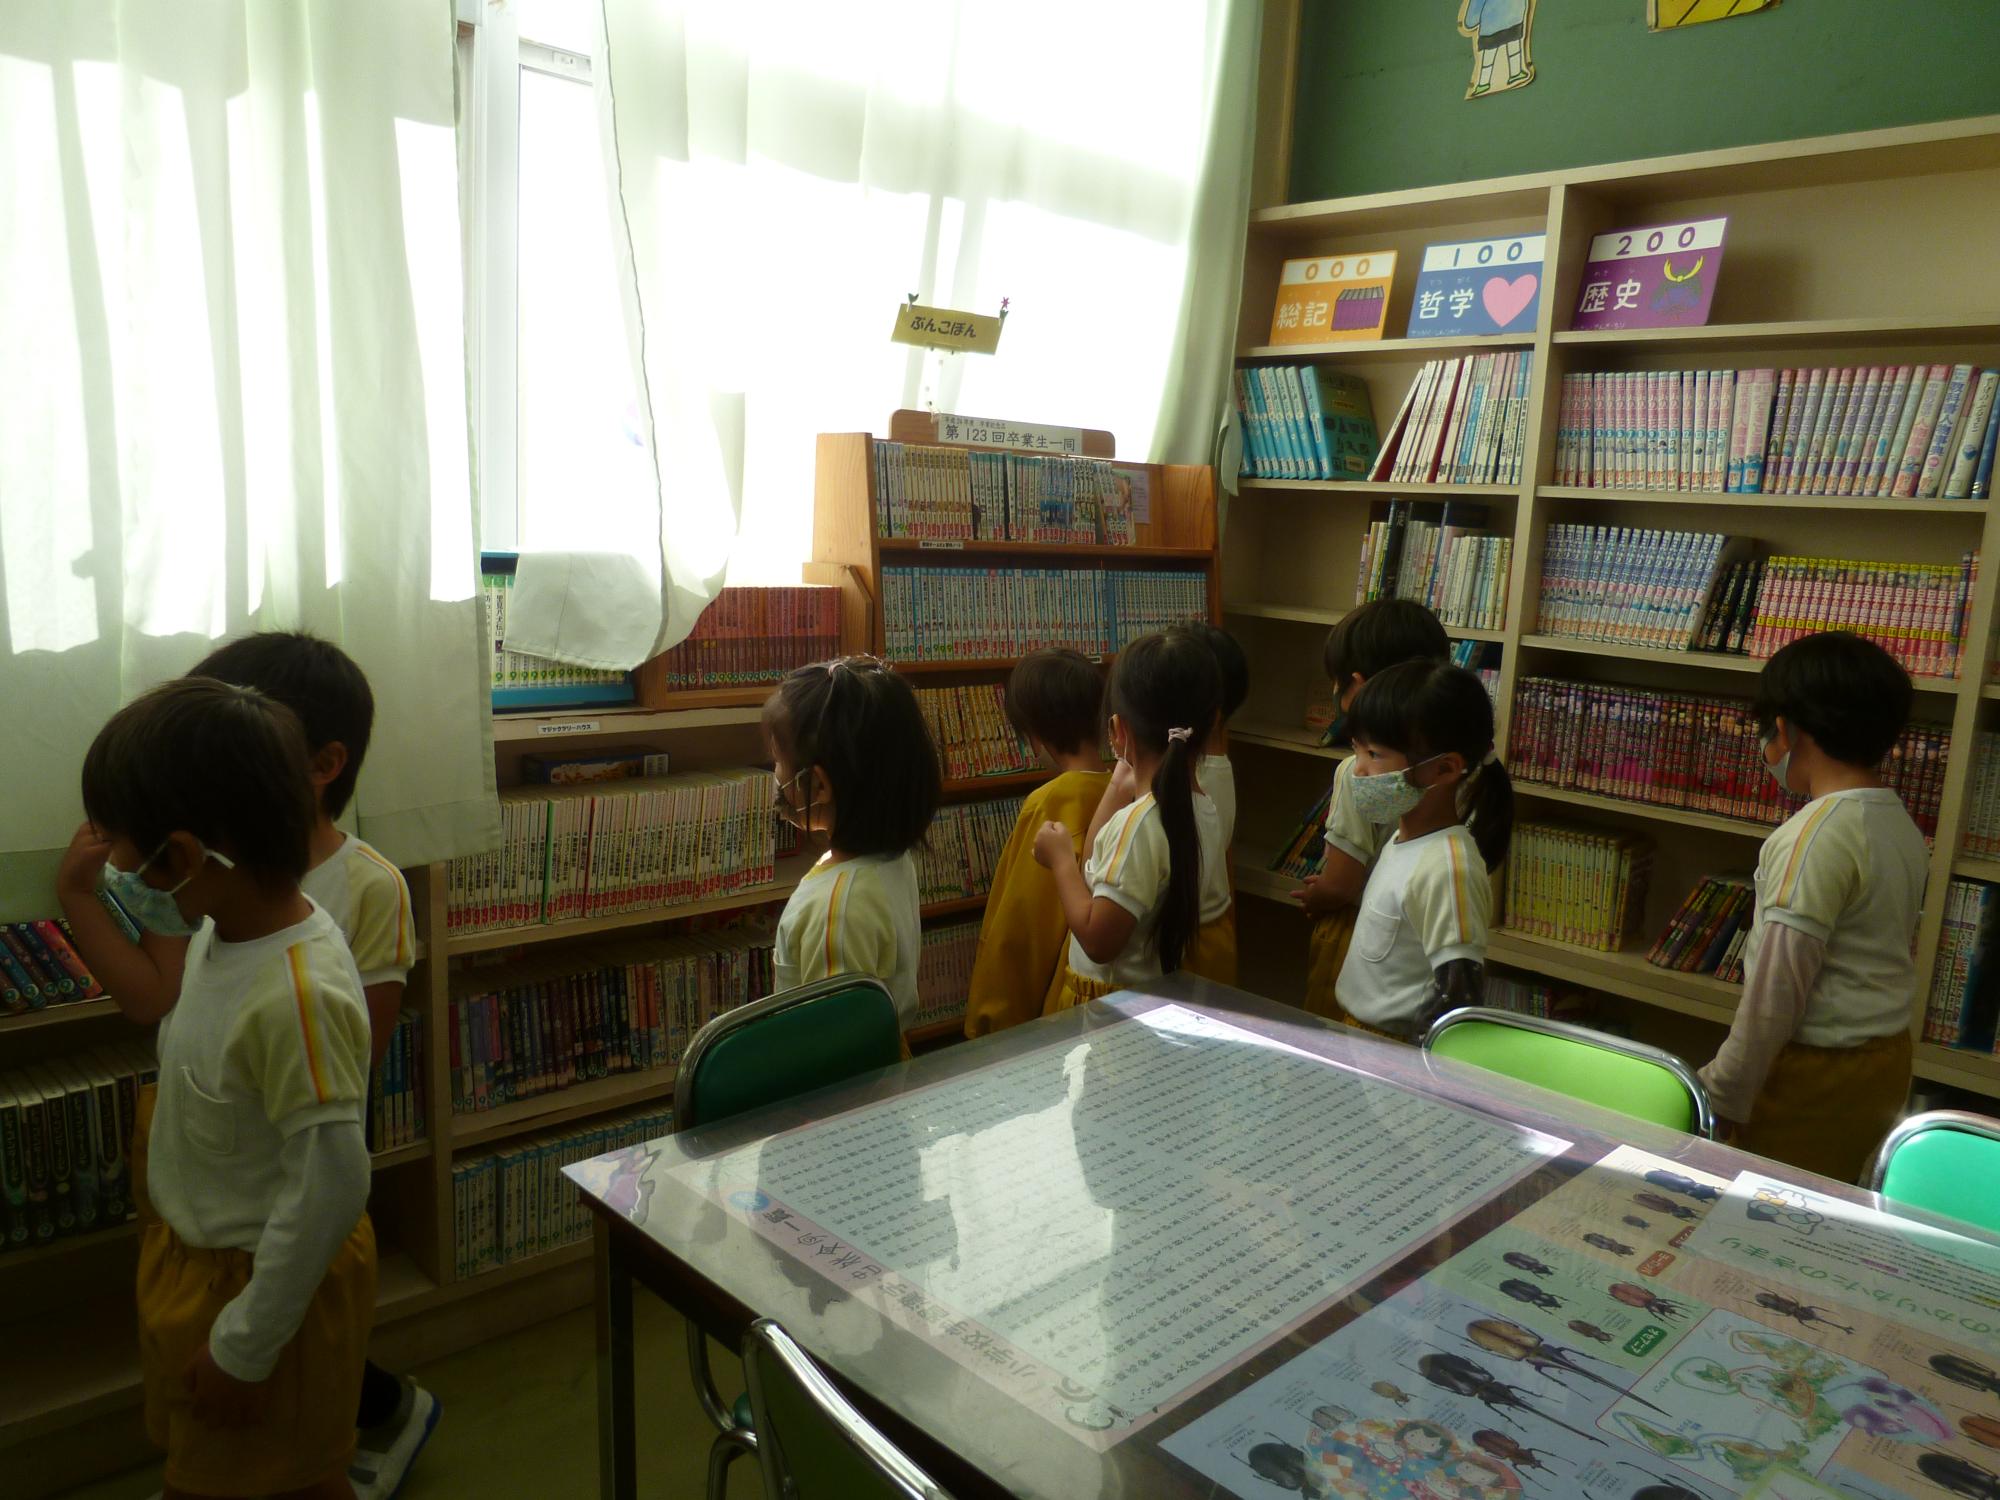 図書室の中で8人の子どもが読む本を選んでいる様子の写真